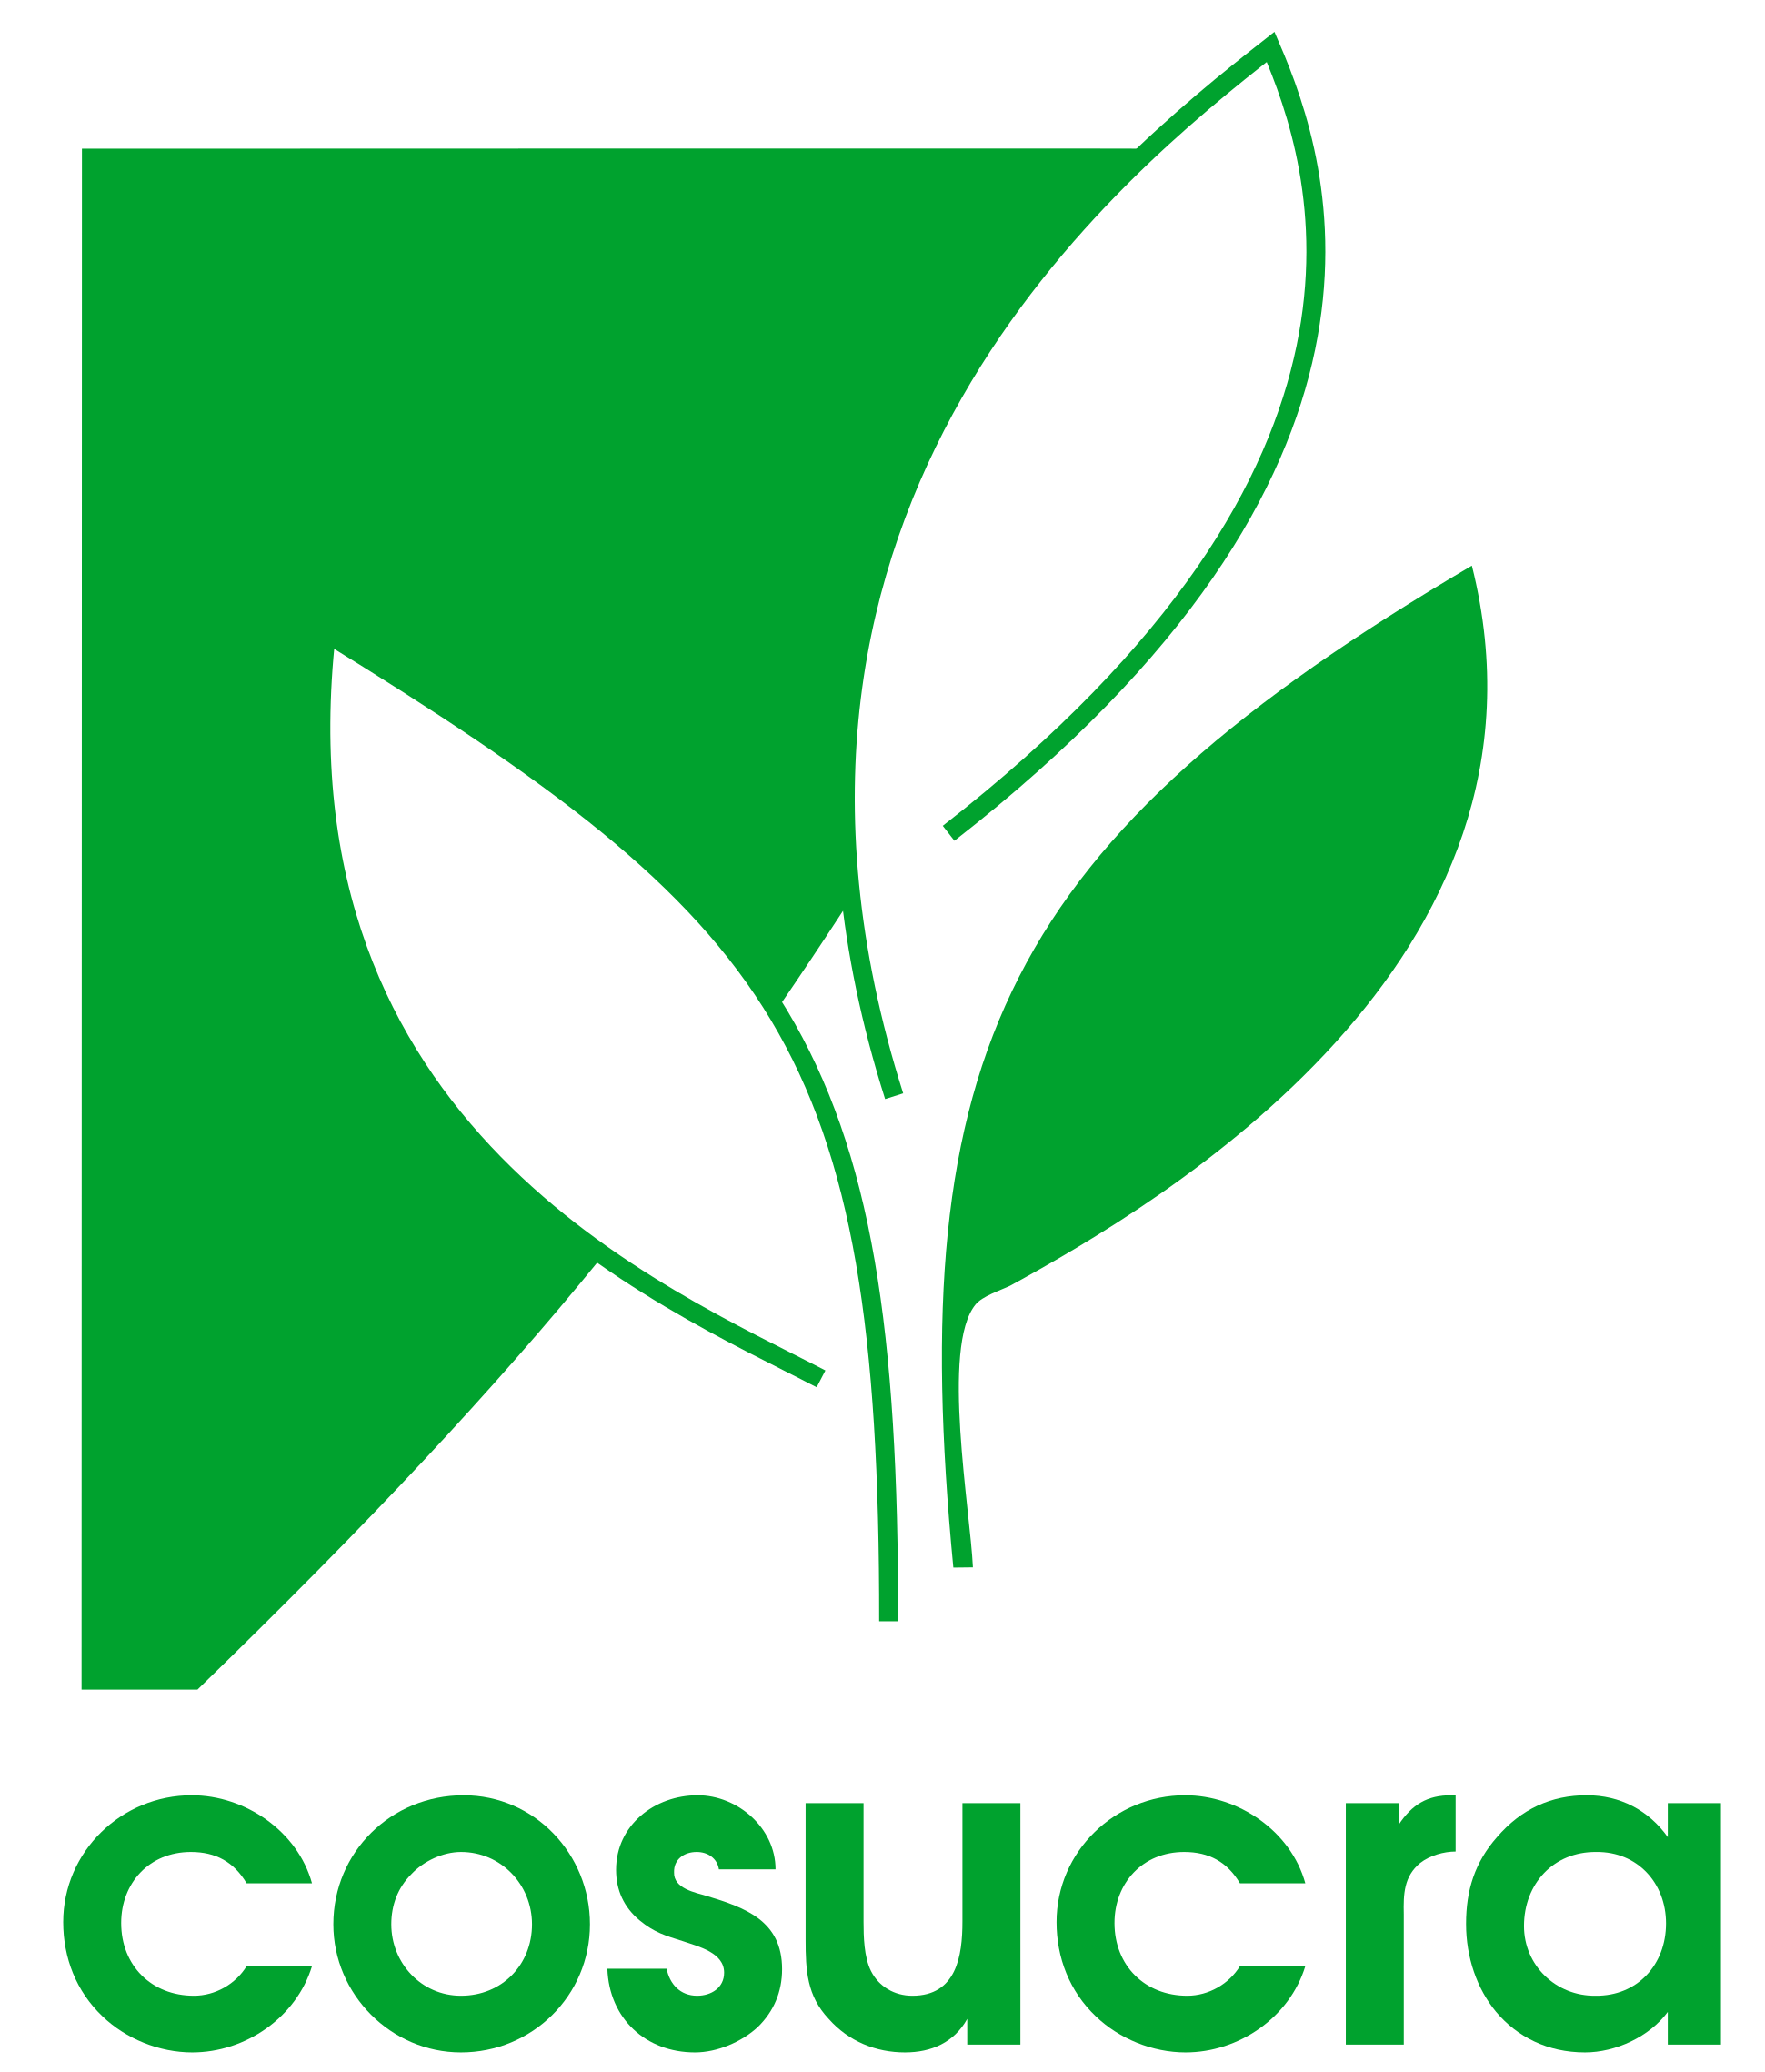 Cosucra